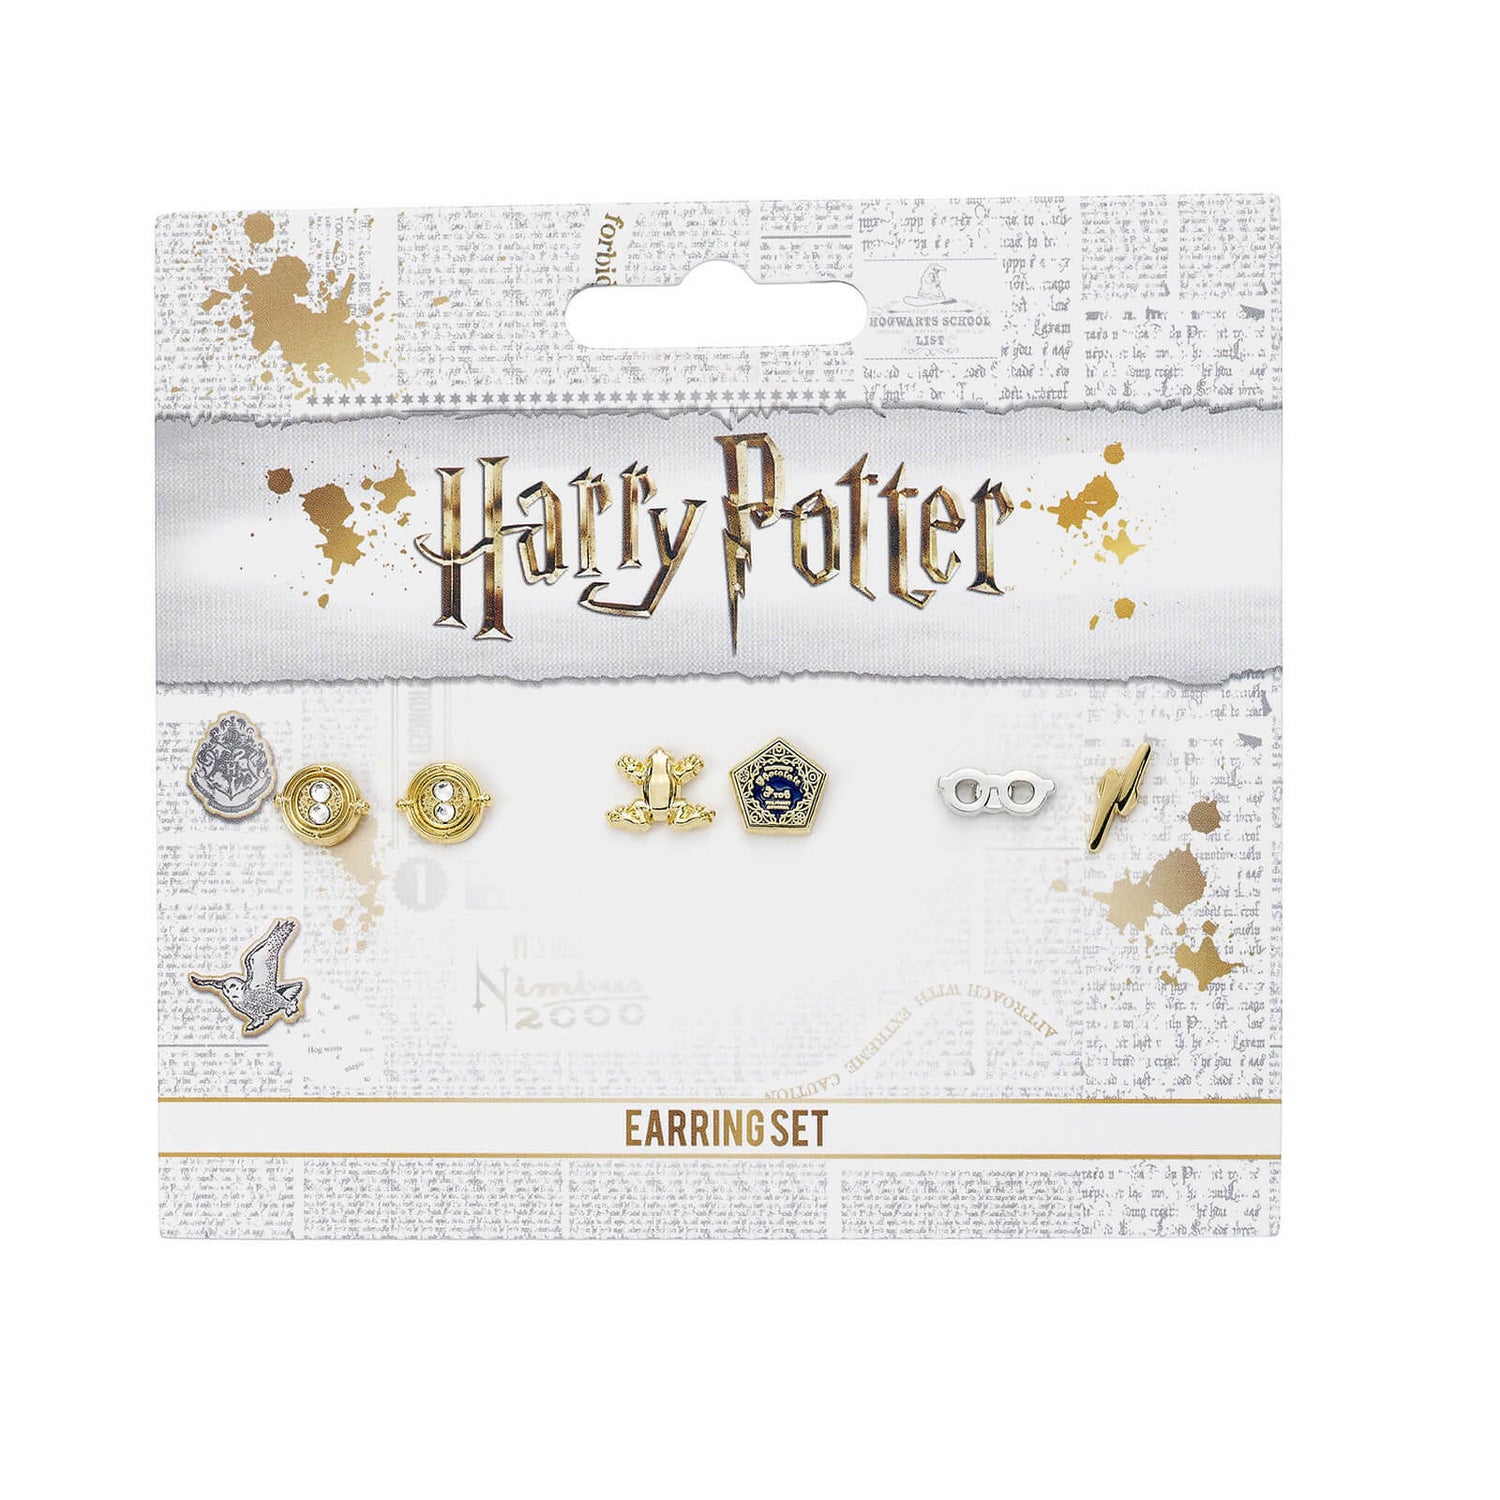 Harry Potter Stud Earring Set - Time Turner, Chocolate Frog, Glasses & Lightning Bolt - Silver